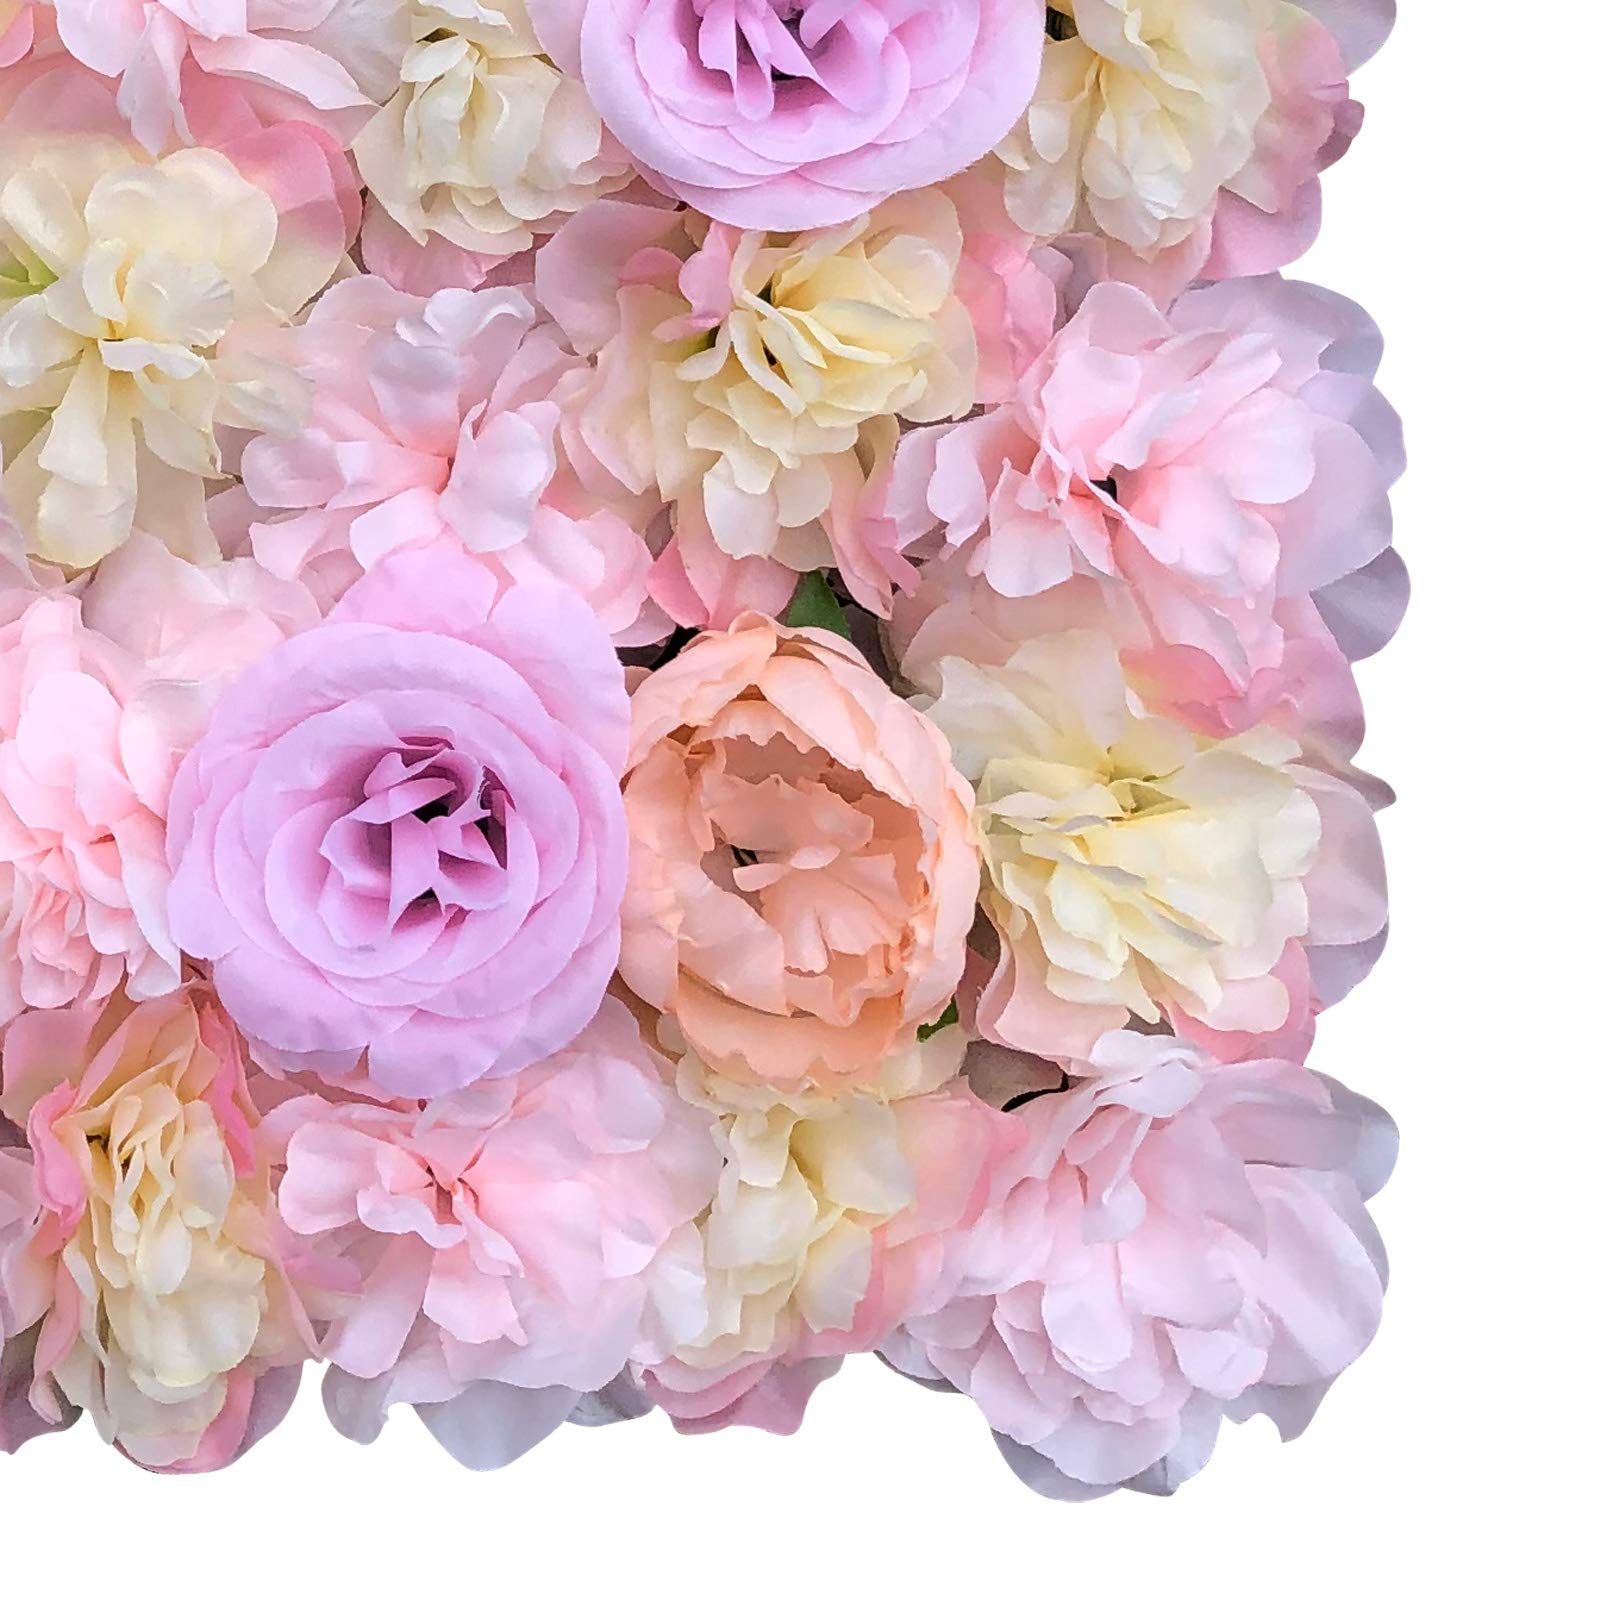  5 pezzi di fiori artificiali da parete di seta, fiori artificiali, decorazione da parete per matrimonio, sfondo per fotografia